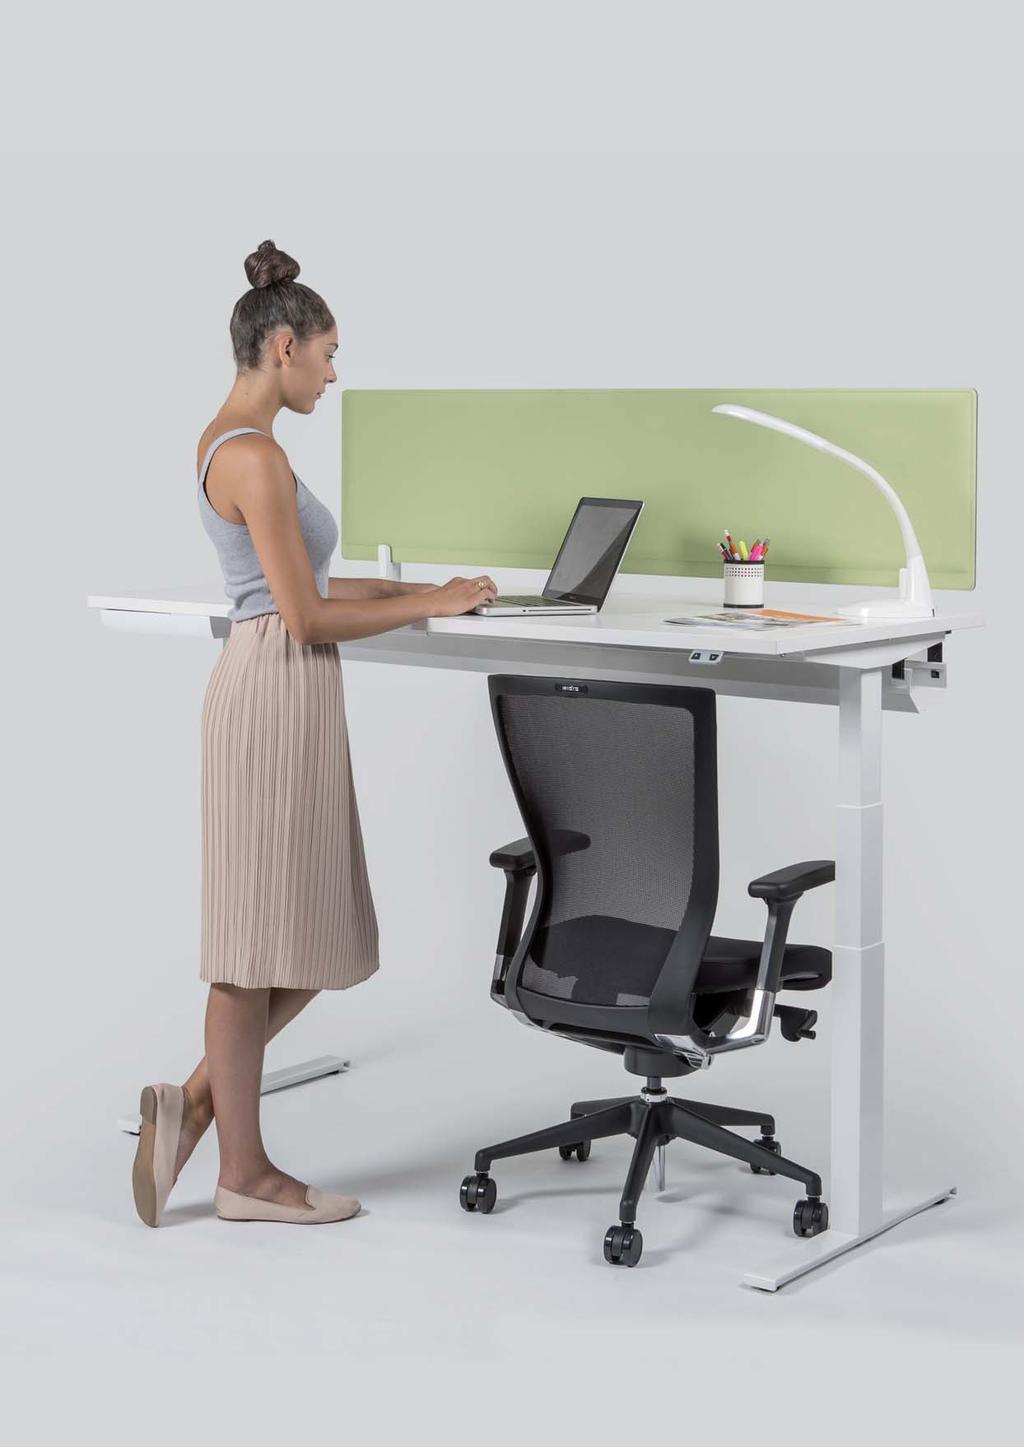 Jednoduchým ovládáním můžete střídat sezení a stání, což výrazně snižuje riziko bolesti zad a přináší vítanou změnu při práci.